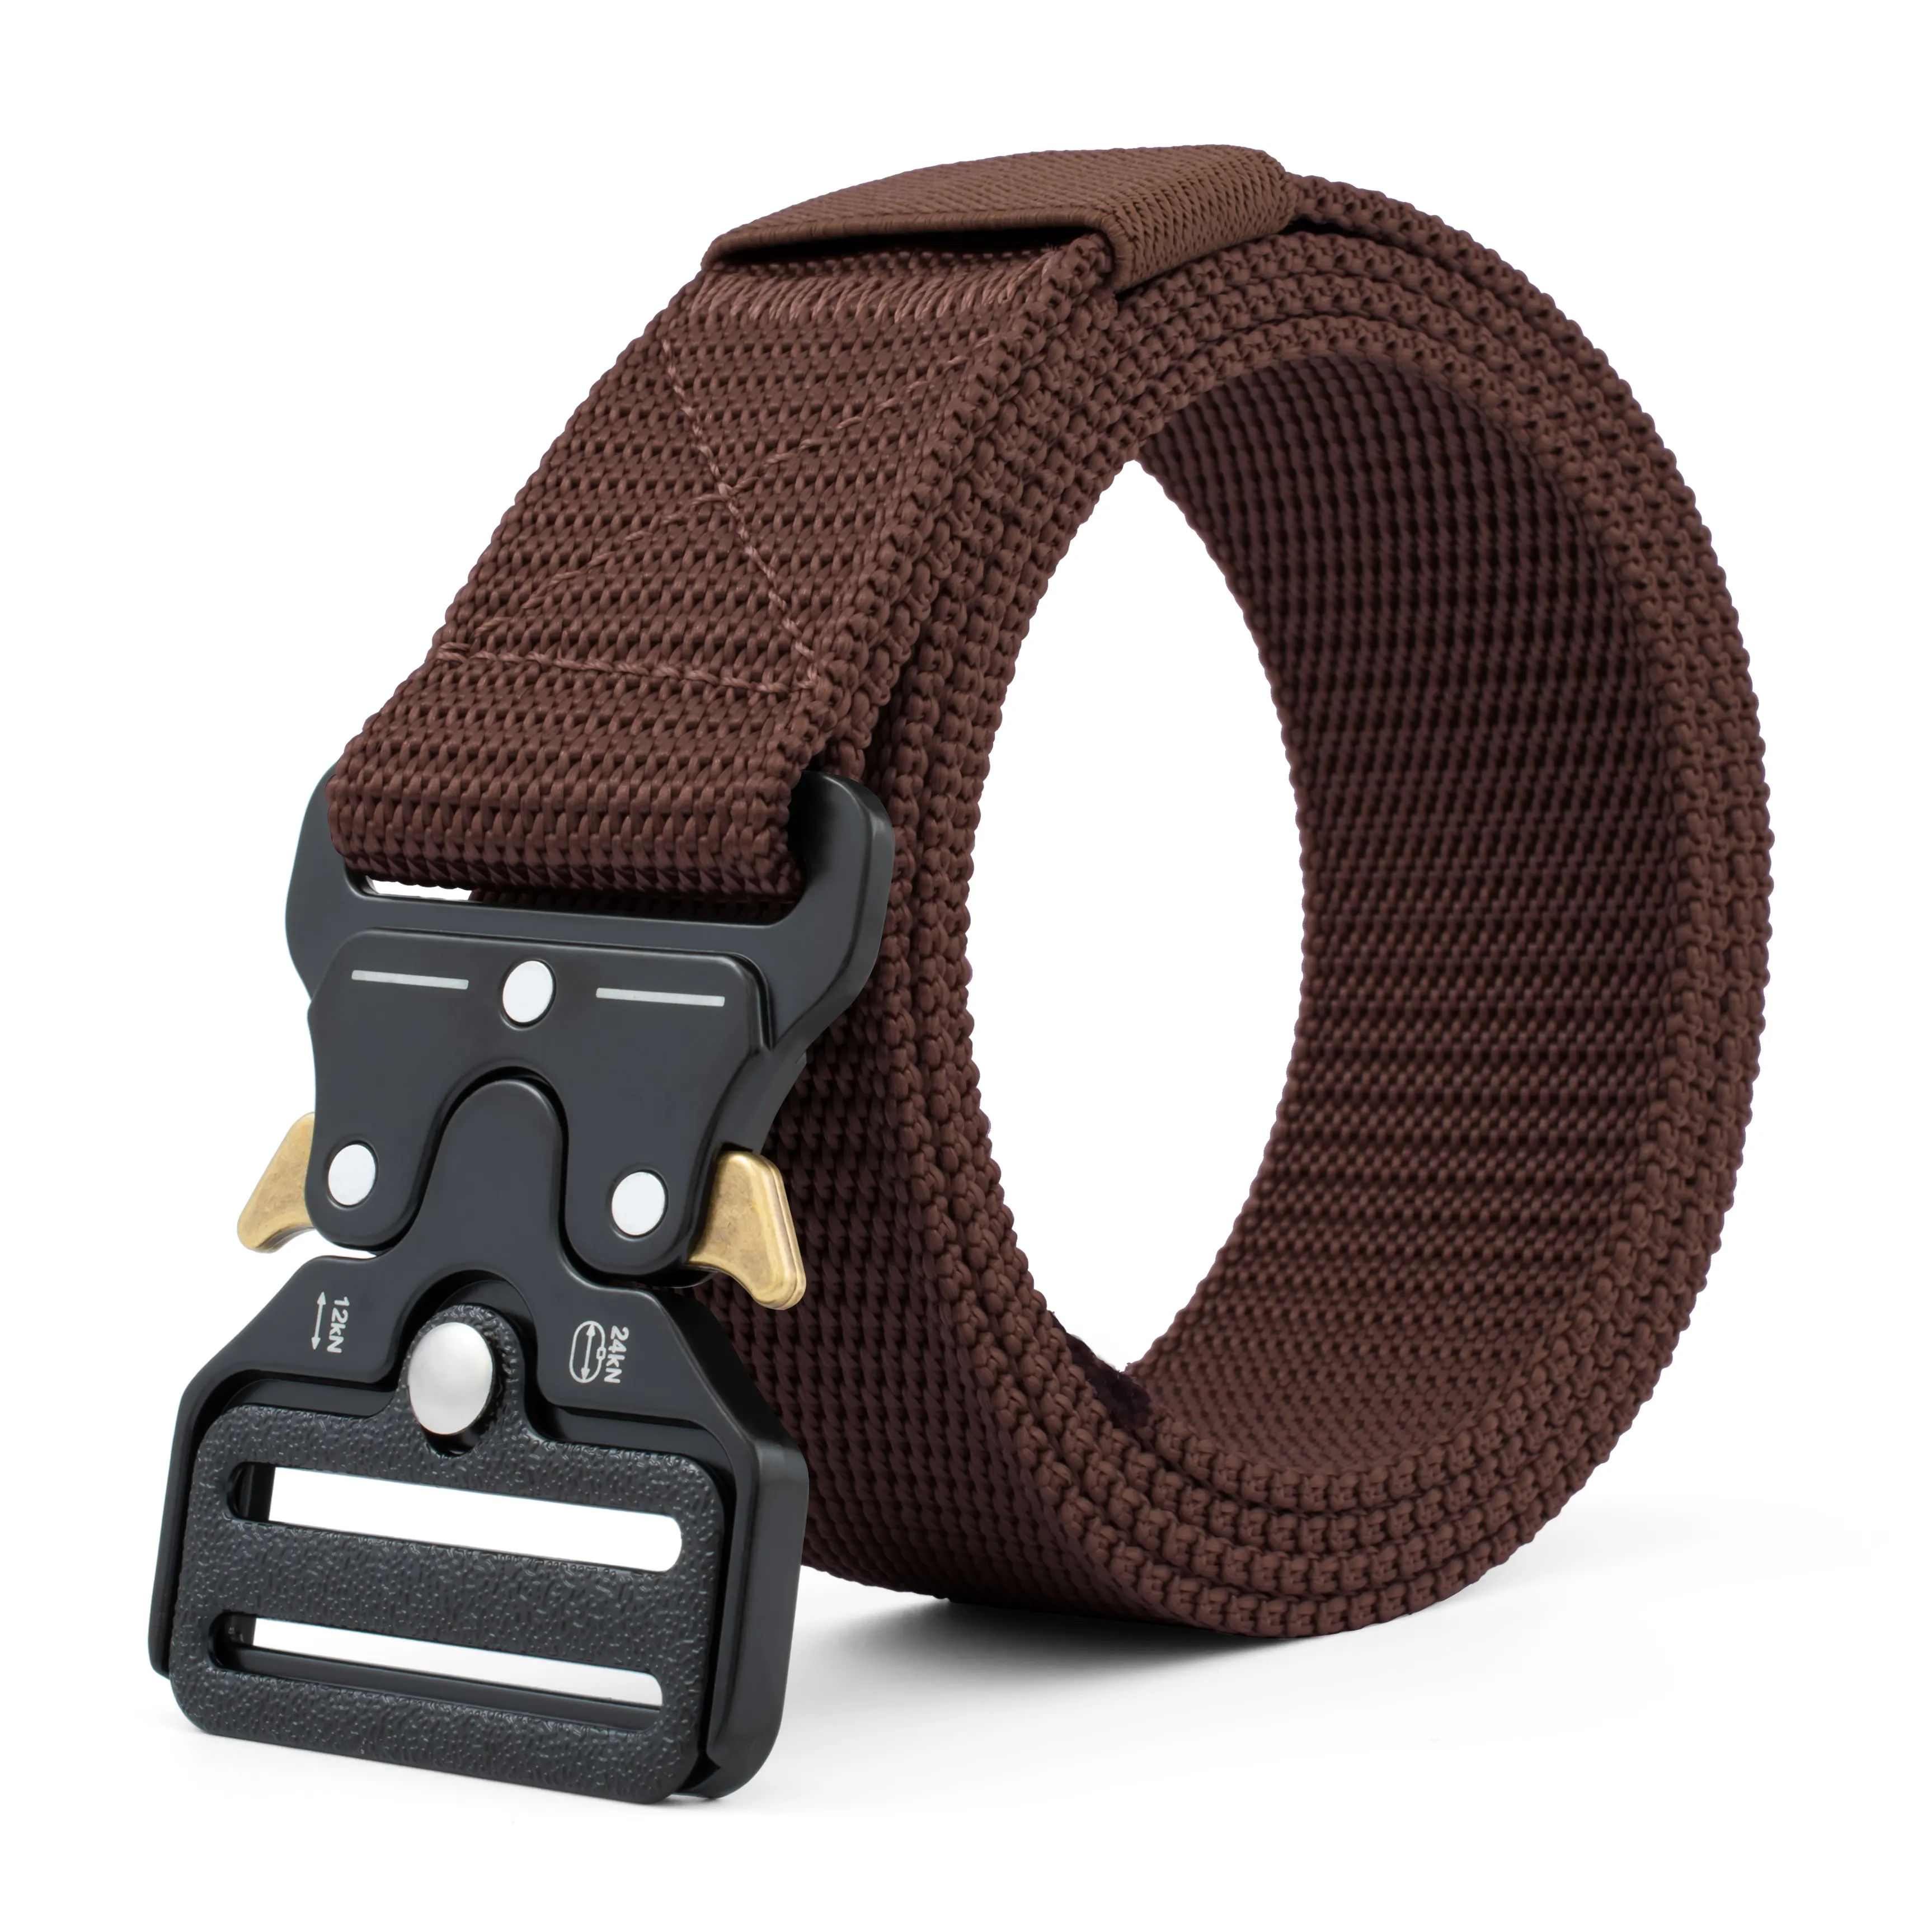 Custom High quality alloy buckle customized nylon outdoor security waist tactical fabric belt